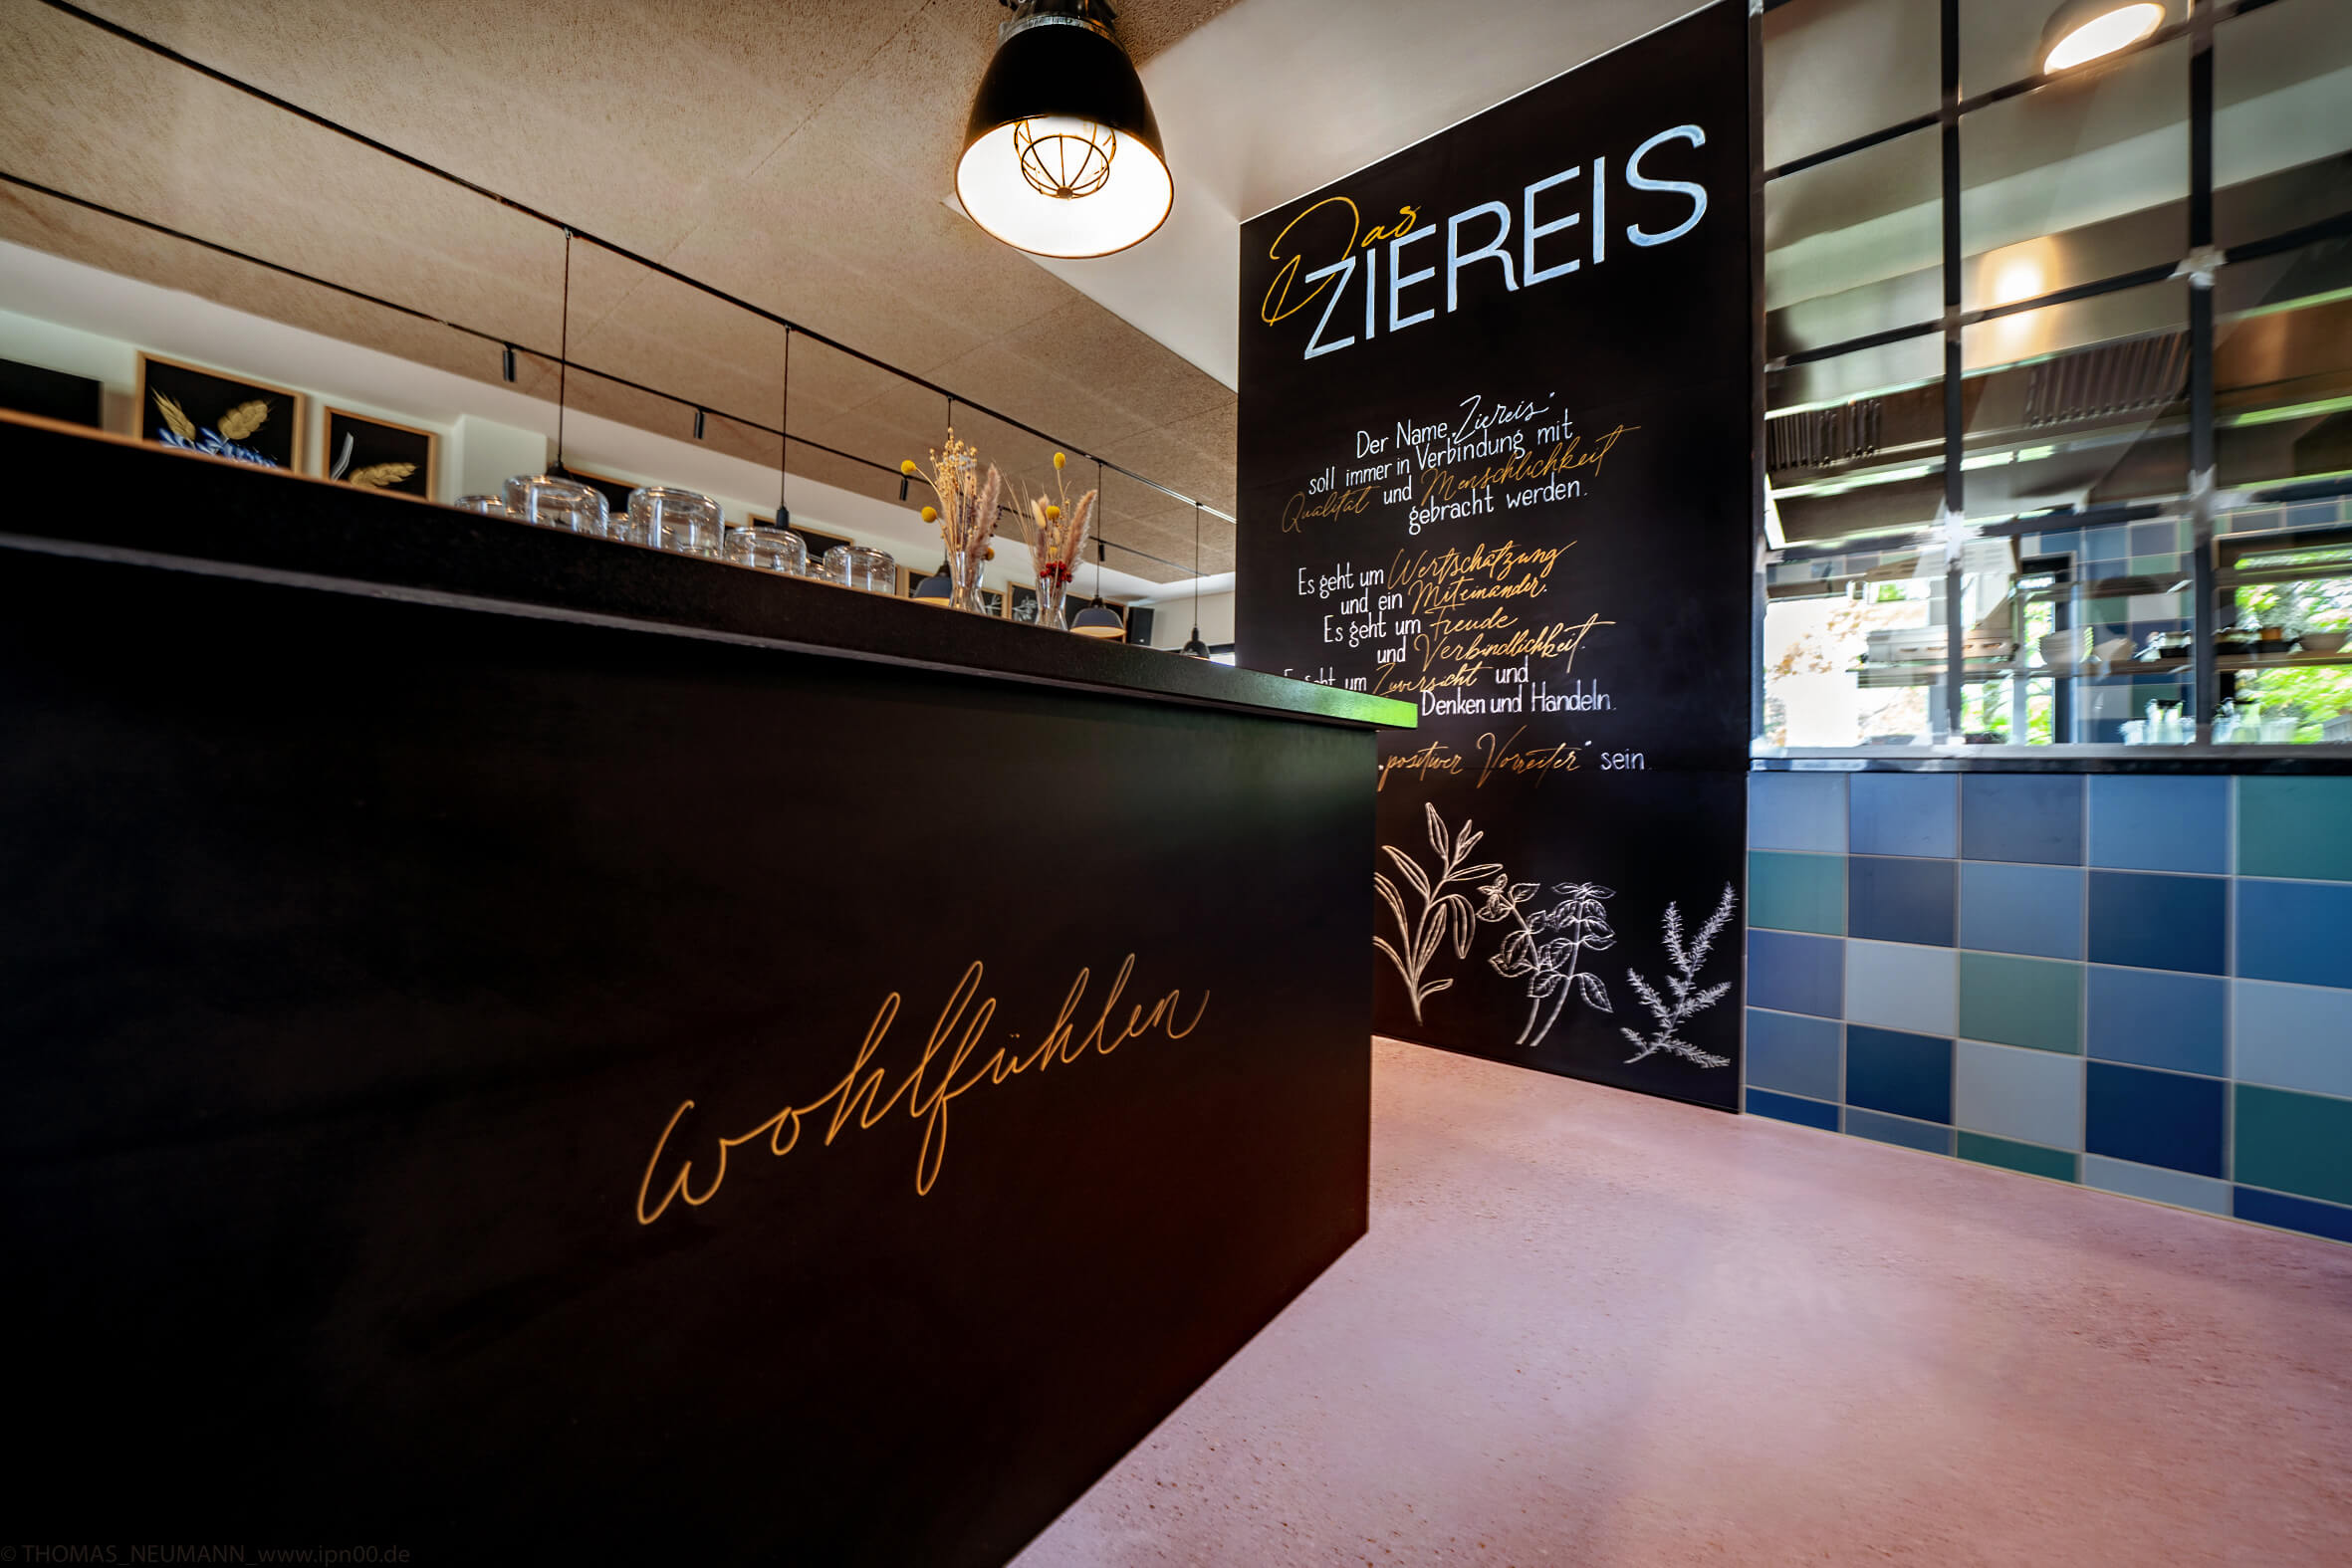 Das Bild zeigt das Mitarbeiter-Restaurant der Team Ziereis GmbH.